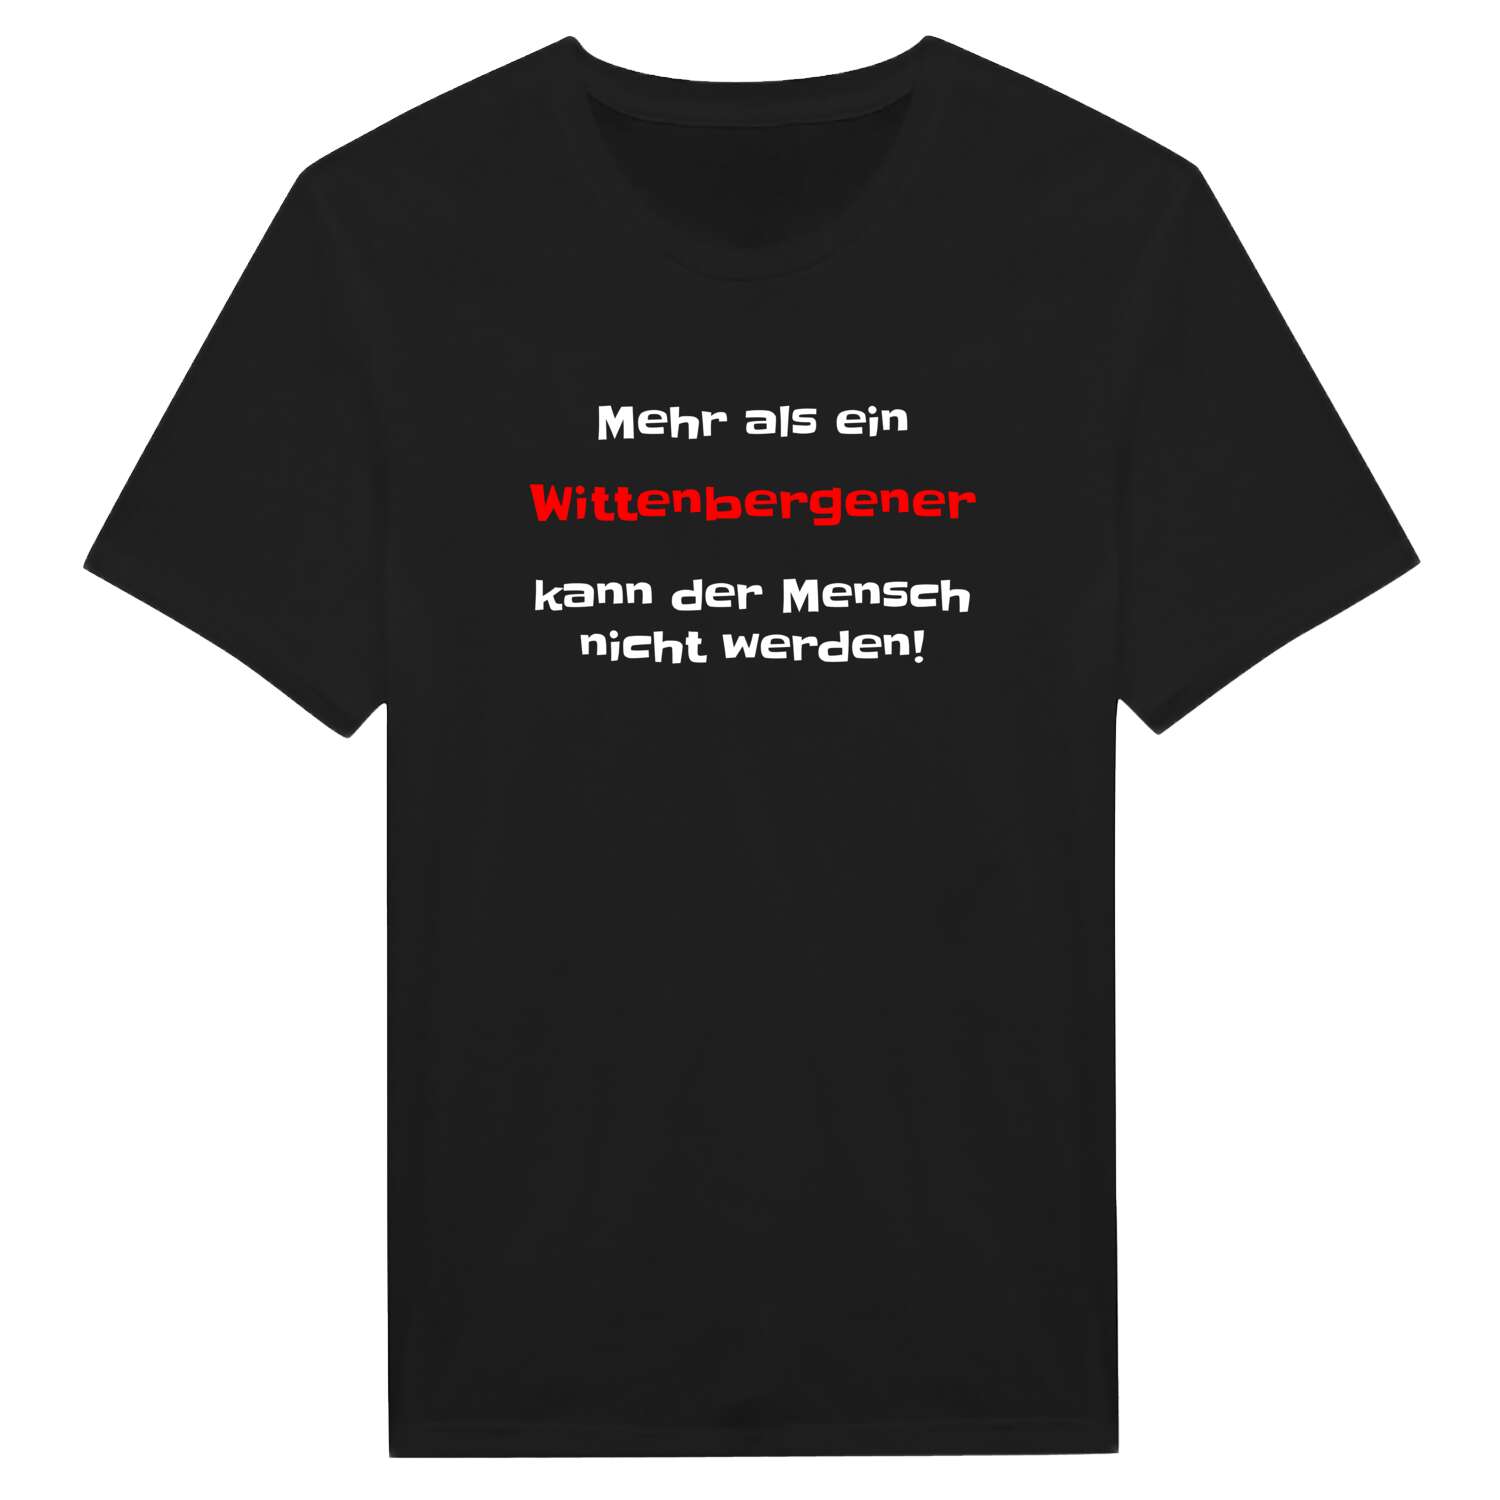 Wittenberge T-Shirt »Mehr als ein«